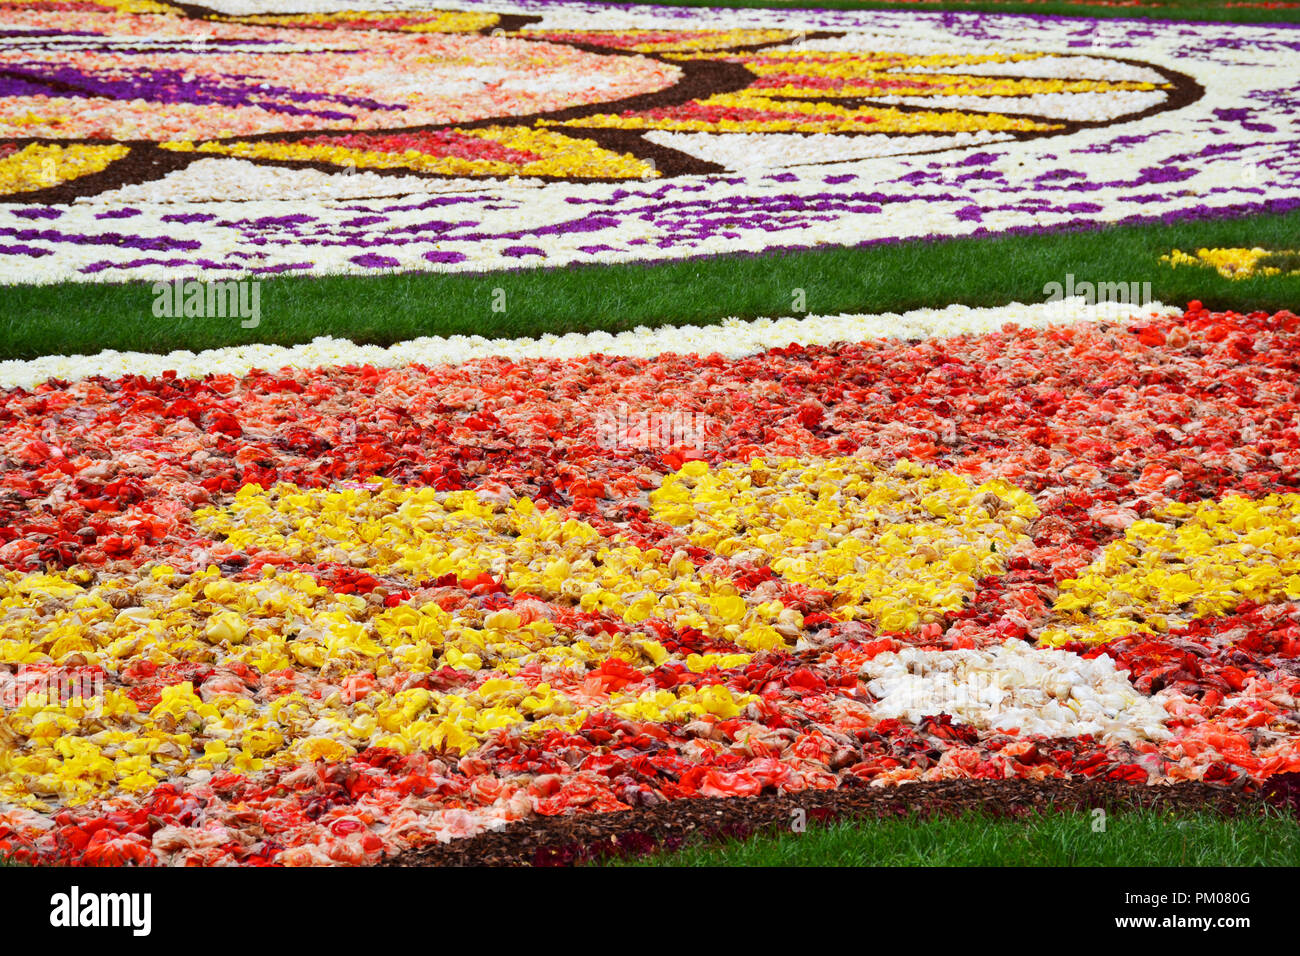 Bruxelles Grand Place tapis de fleurs à base de bulbes à fleurs, Belgique Banque D'Images